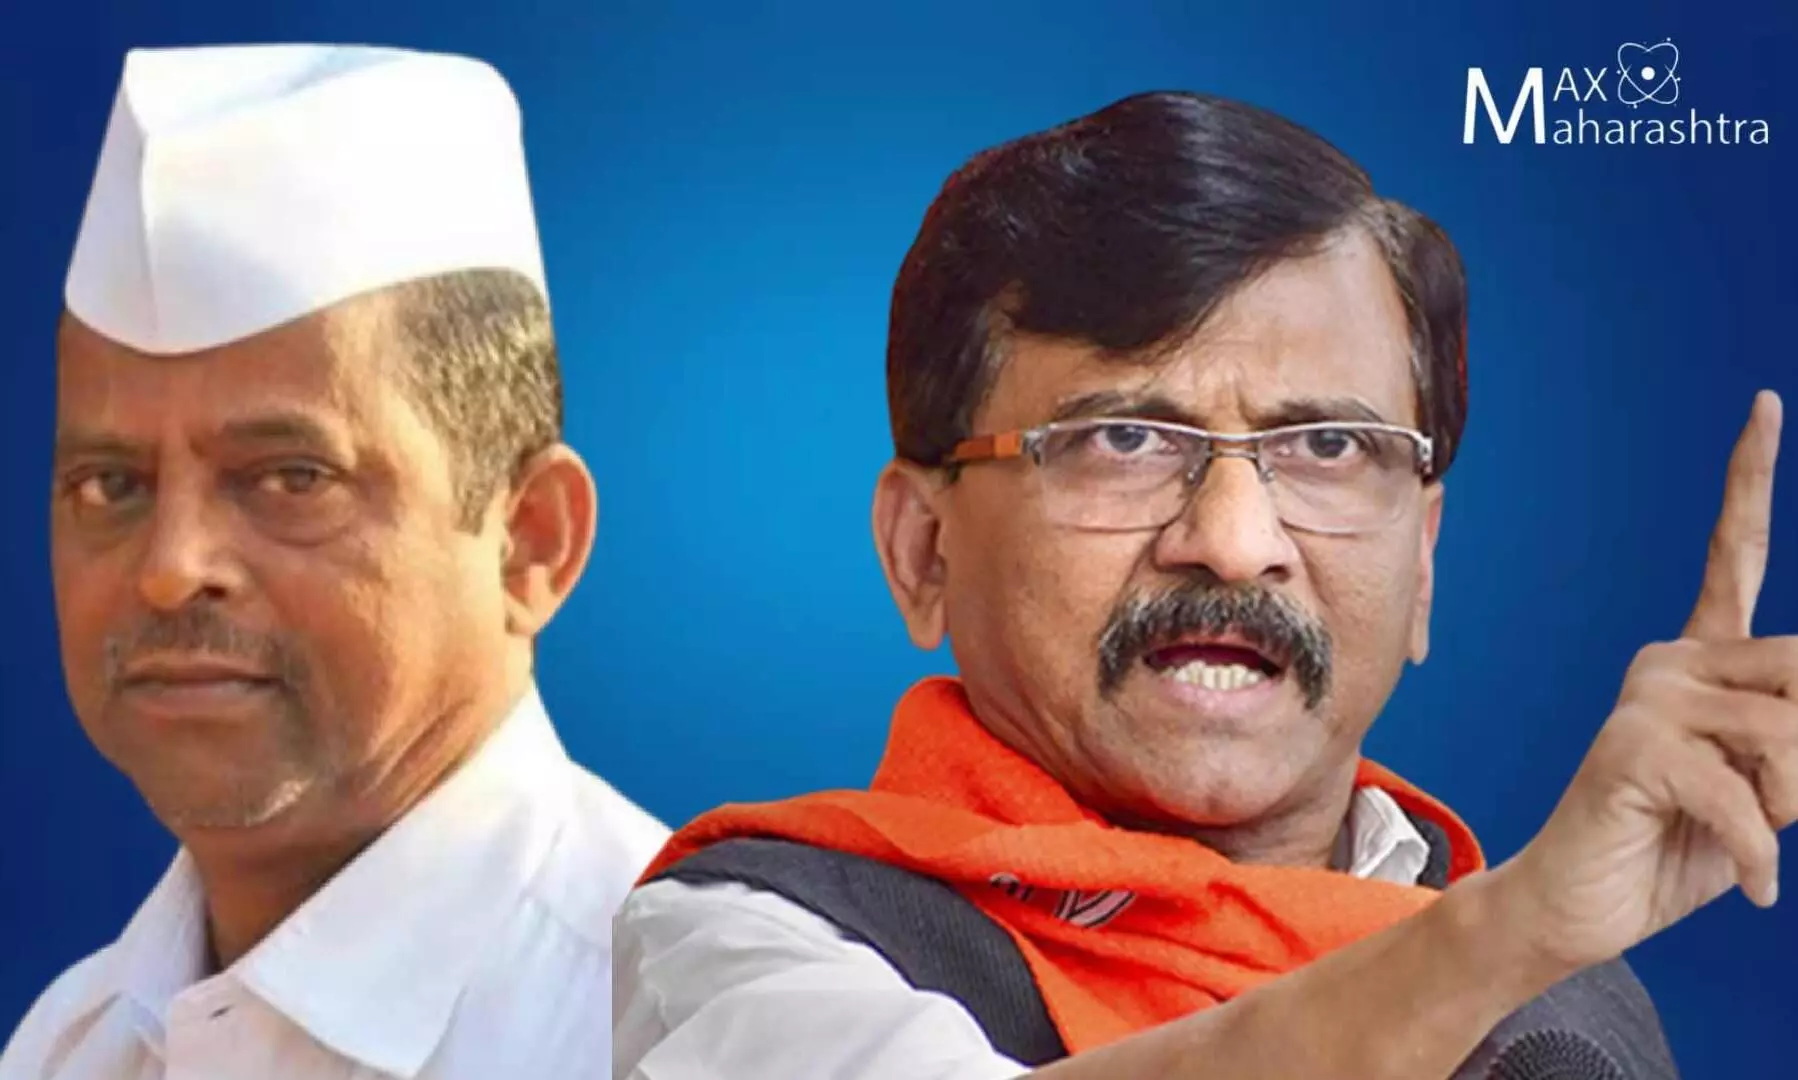 Maharashtra Political crises | झिरवळ नॉट रिचेबल, संजय राऊत यांचा ट्विटमधून झिरवळ यांना चिमटा